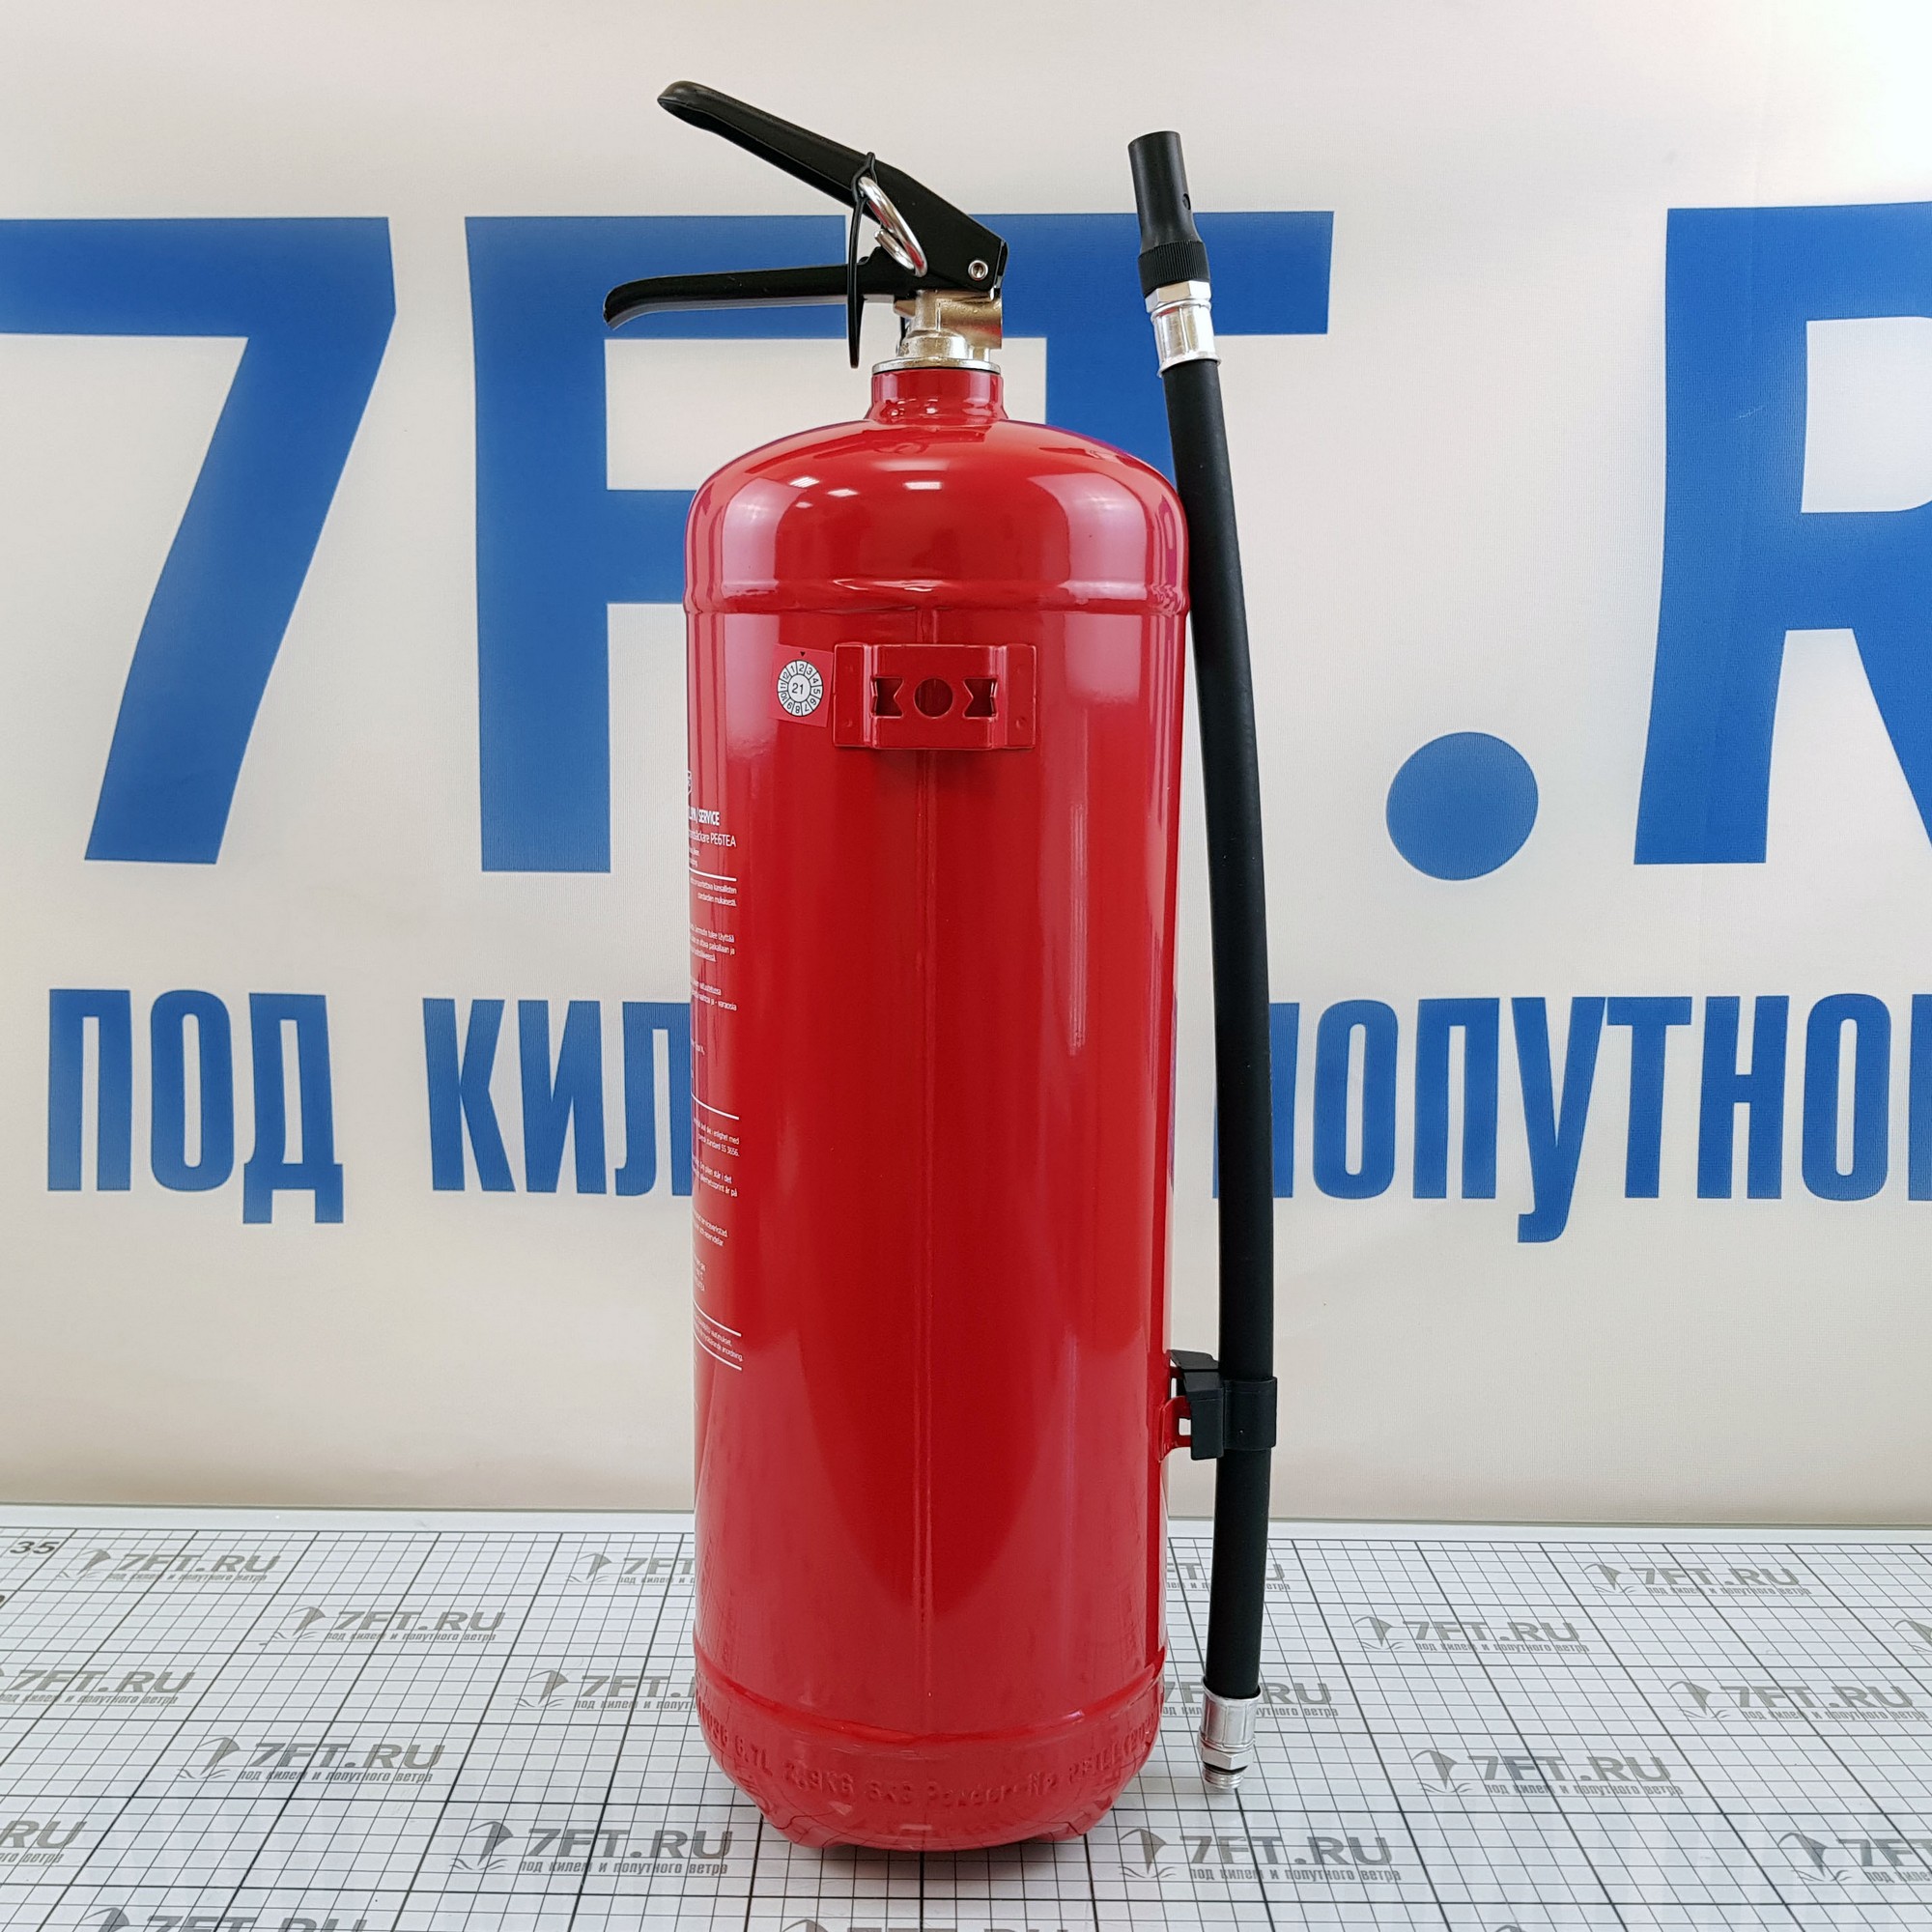 Купить Порошковый огнетушитель Housegard 600070-60 6 кг для судов, купить спасательное снаряжение в интернет-магазине 7ft.ru в интернет магазине Семь Футов